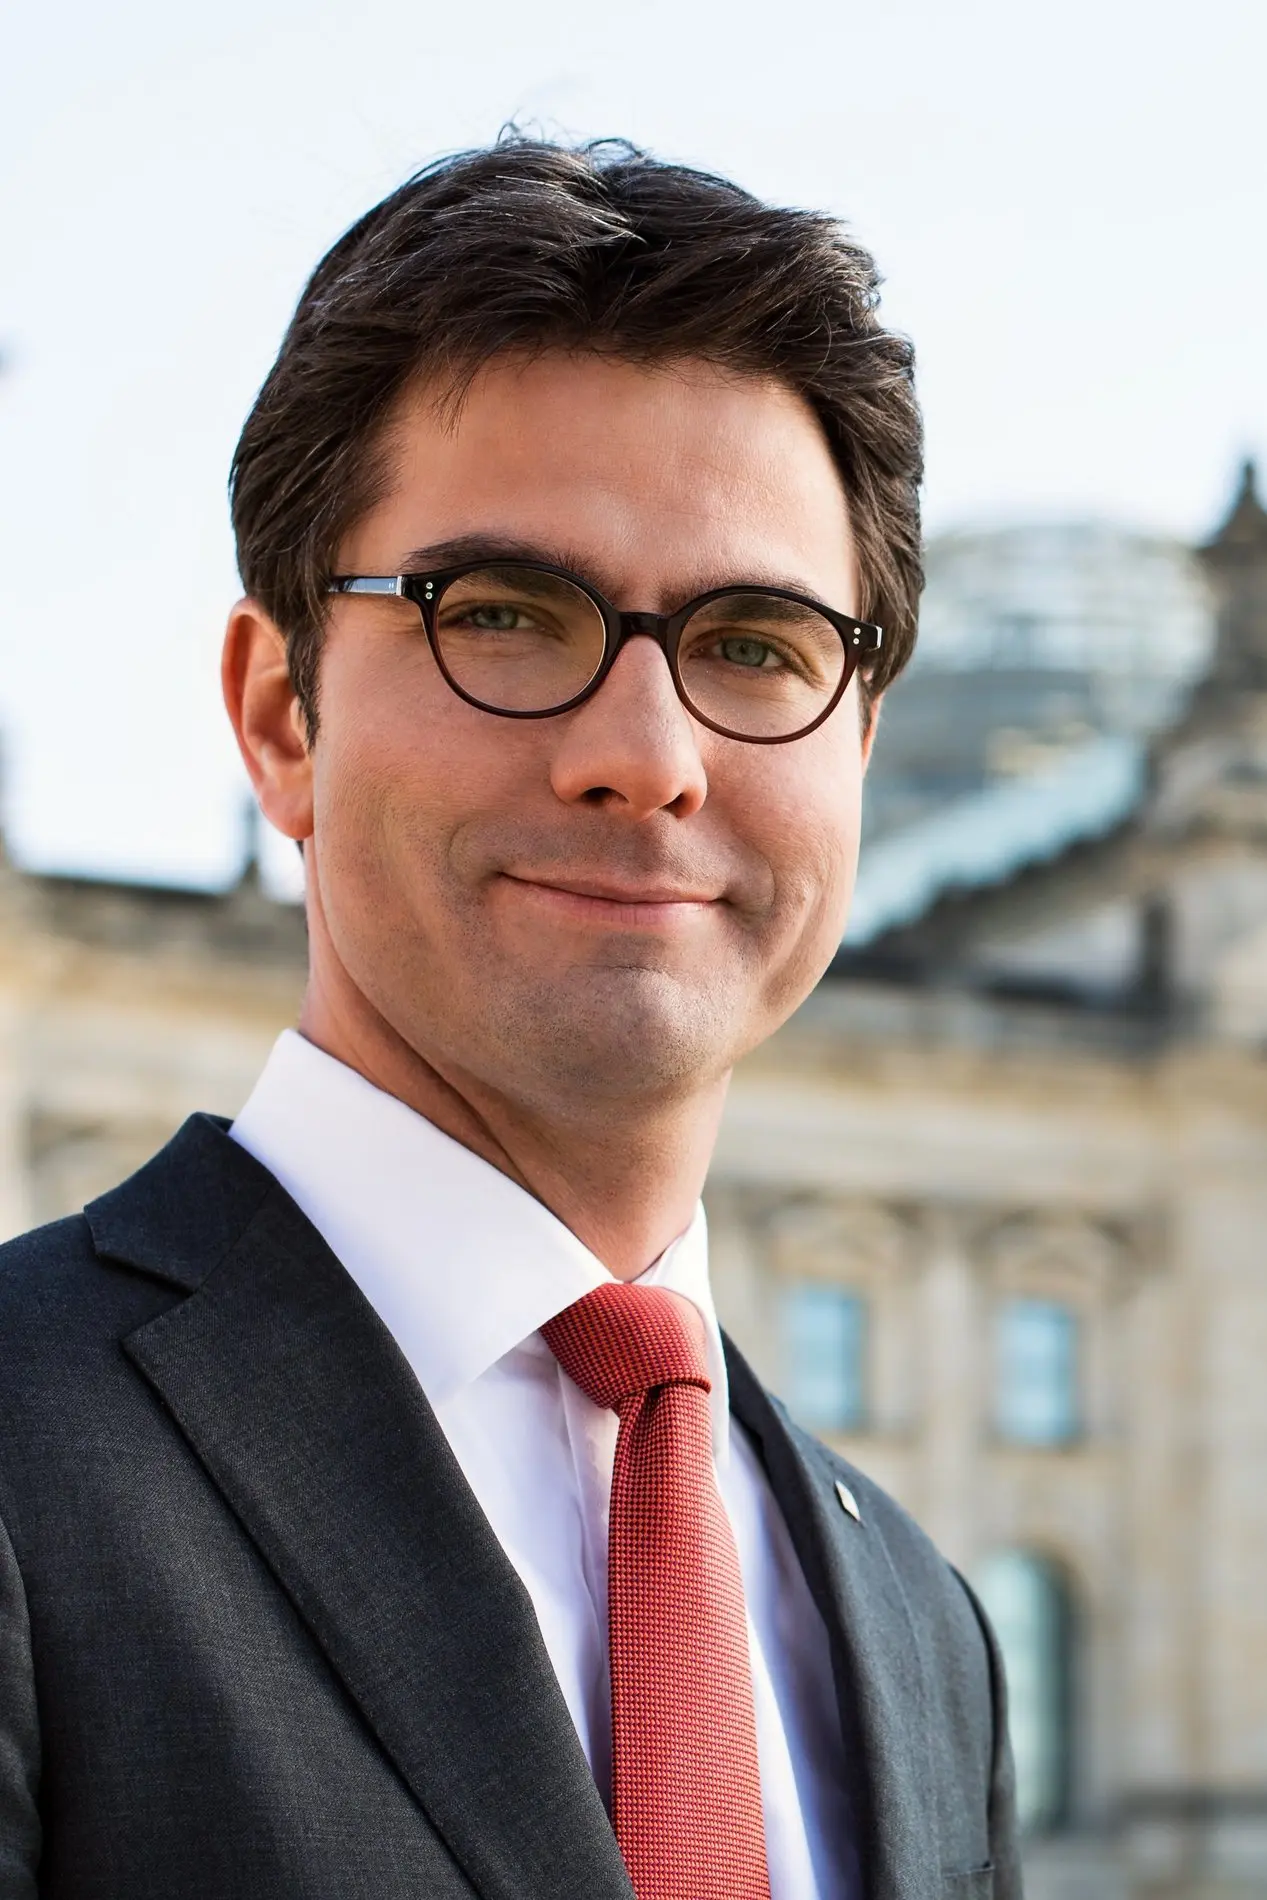 Porträt von Mark Helfrich im Anzug mit Krawatte und Brille.